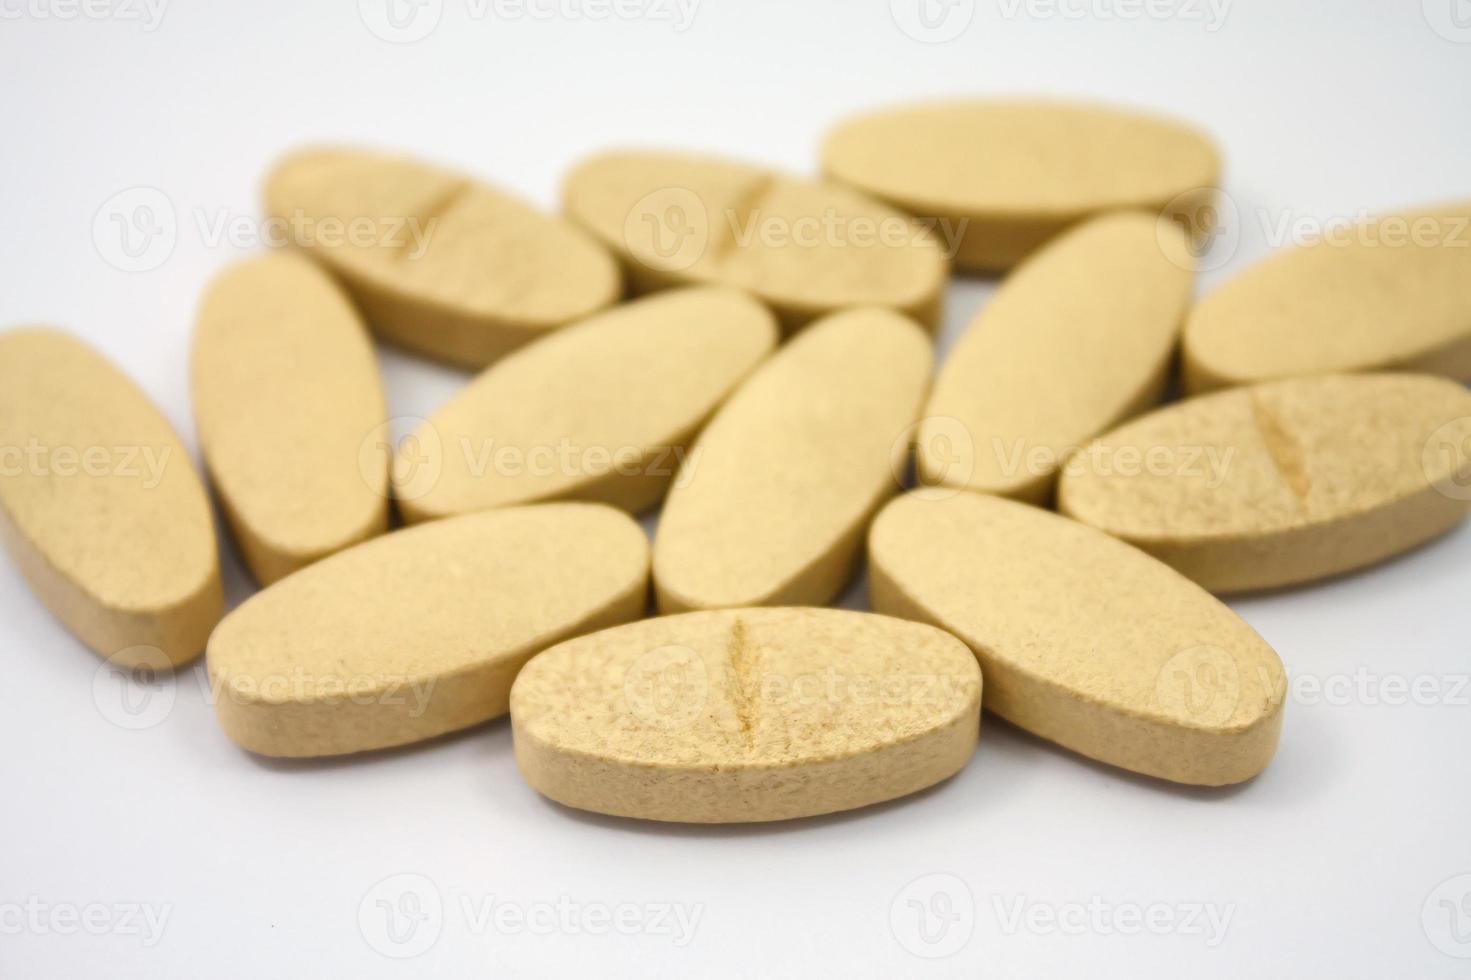 näringsvitamintillskott piller på vit bakgrund foto